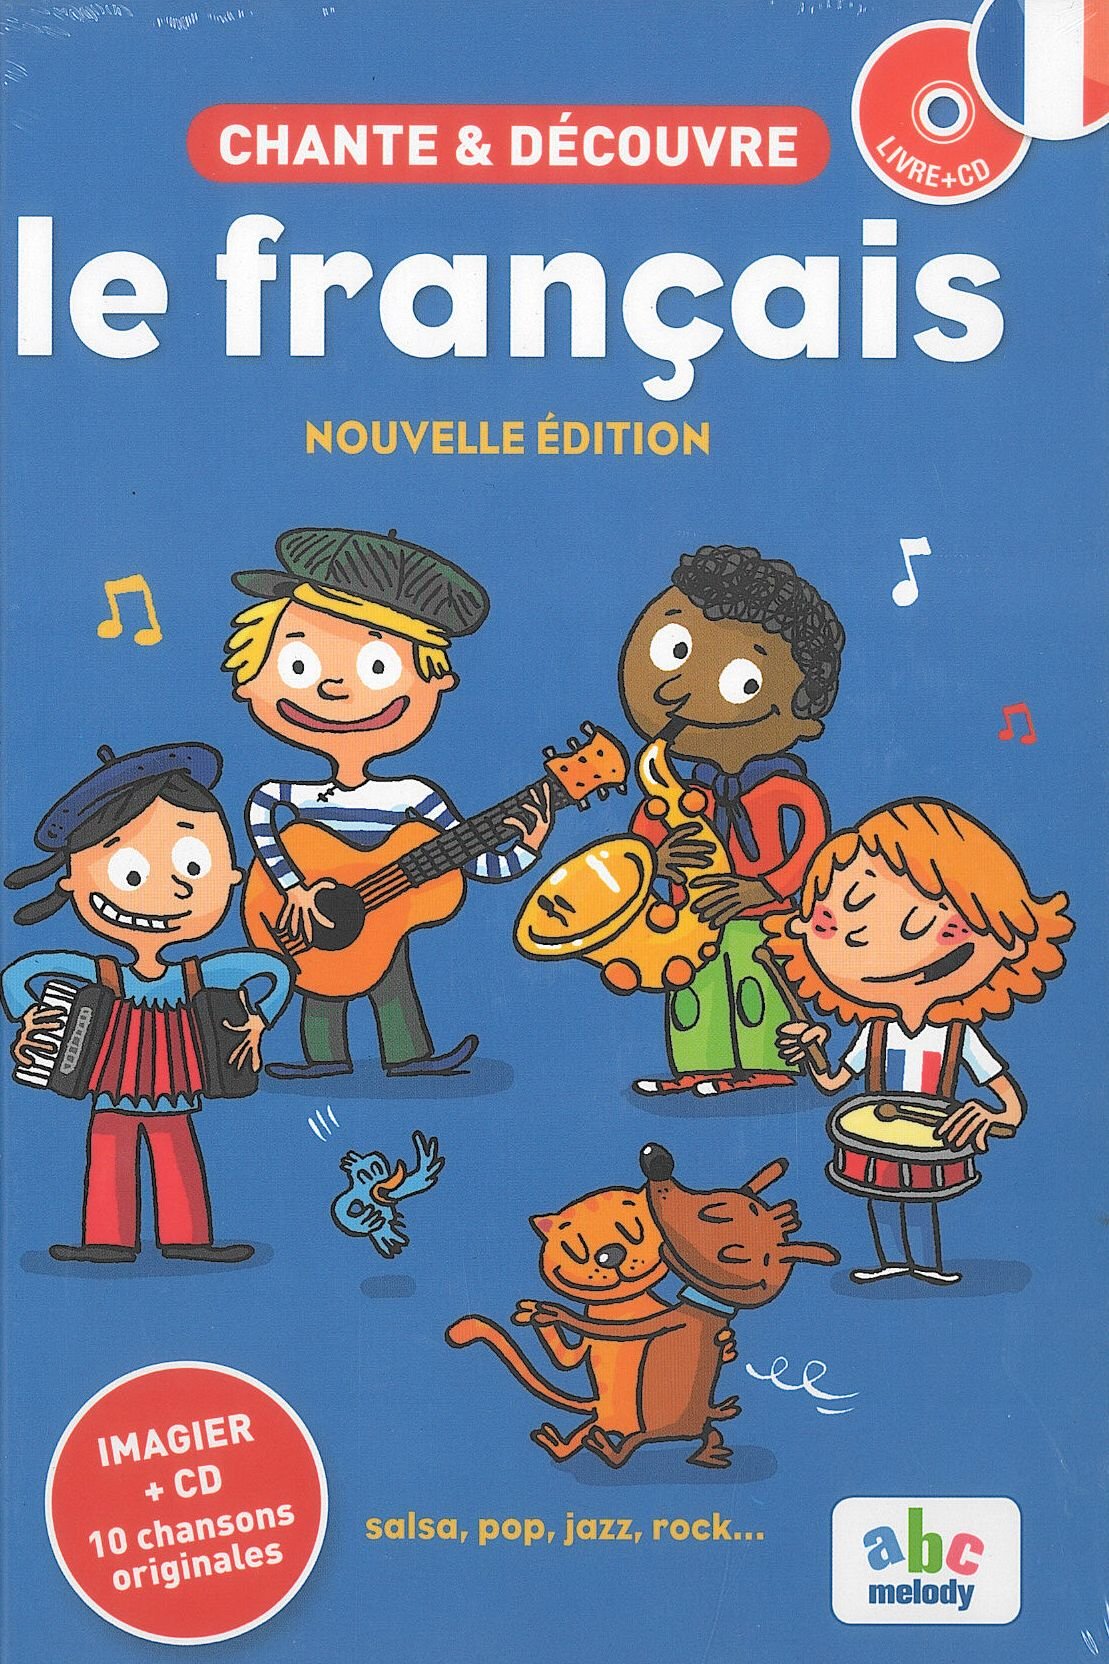 Chante & Découvre le français 